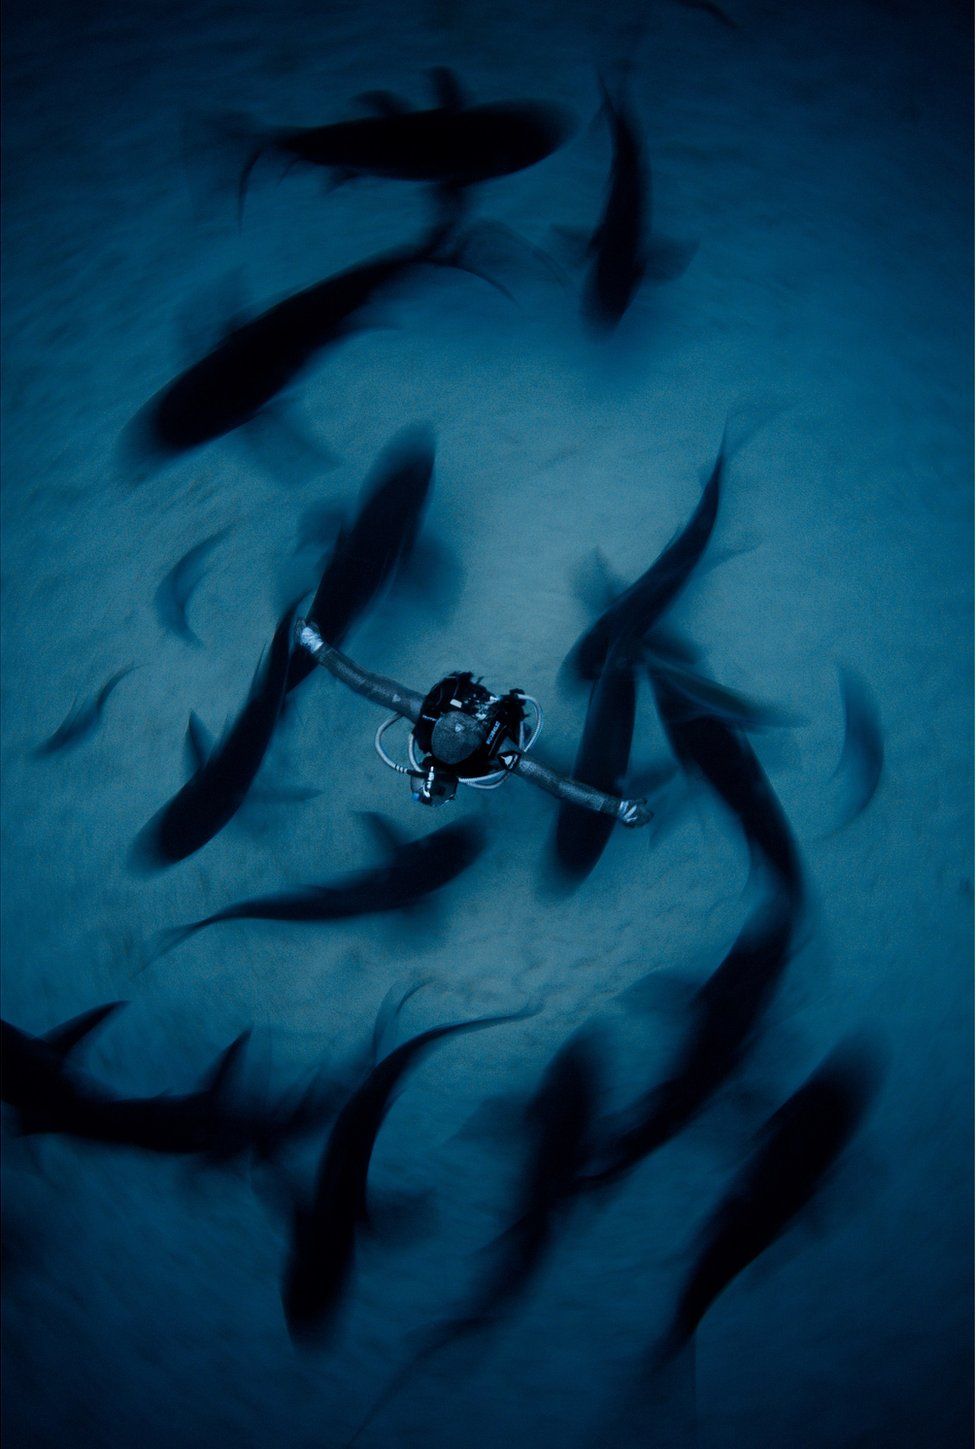 Cristina Zenato rodeada de tiburones en Bahamas.